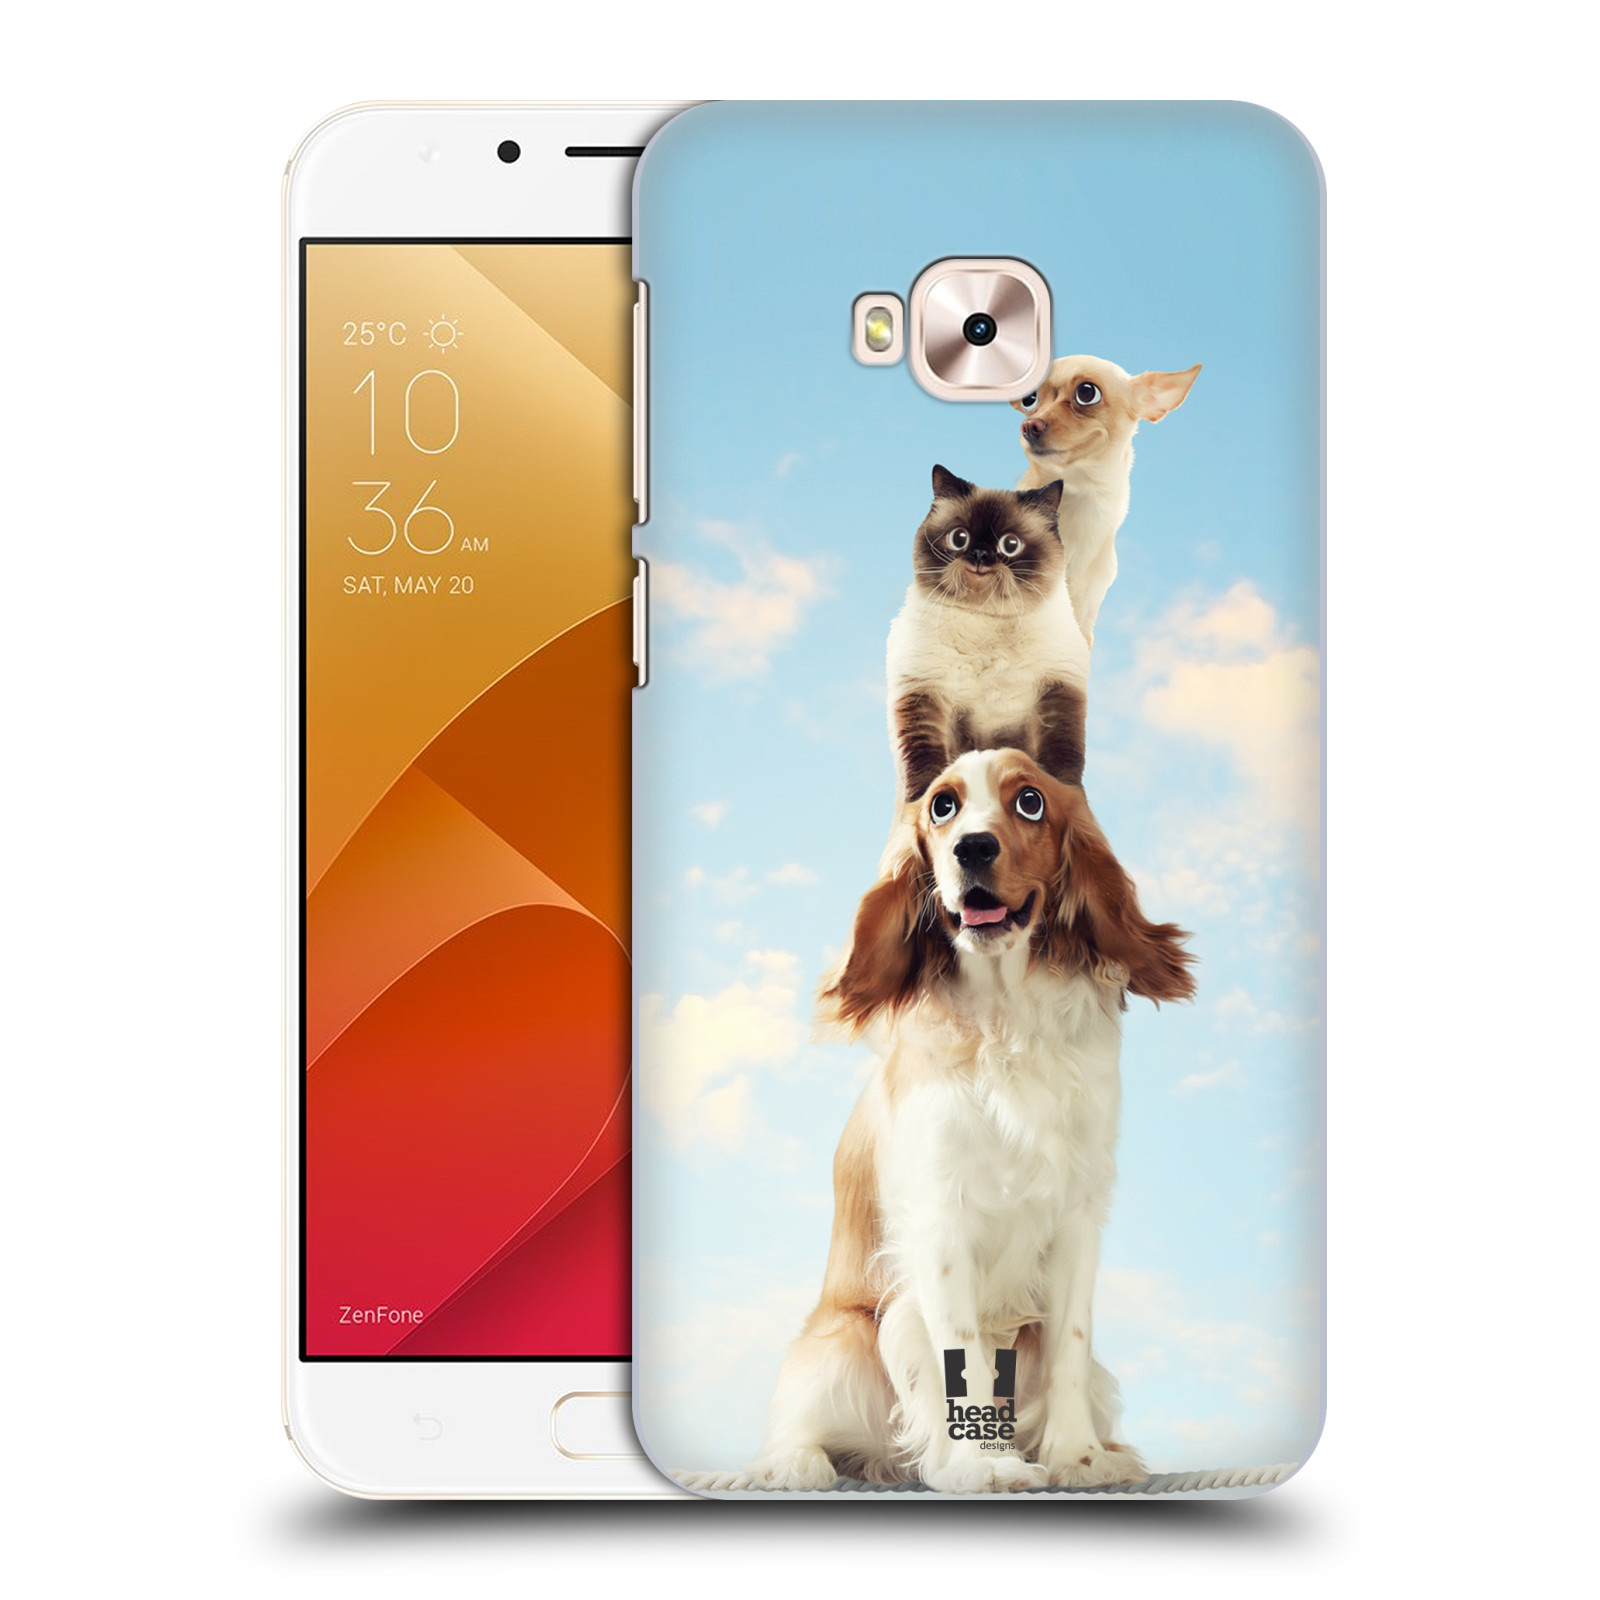 HEAD CASE plastový obal na mobil Asus Zenfone 4 Selfie Pro ZD552KL vzor Legrační zvířátka zvířecí totem